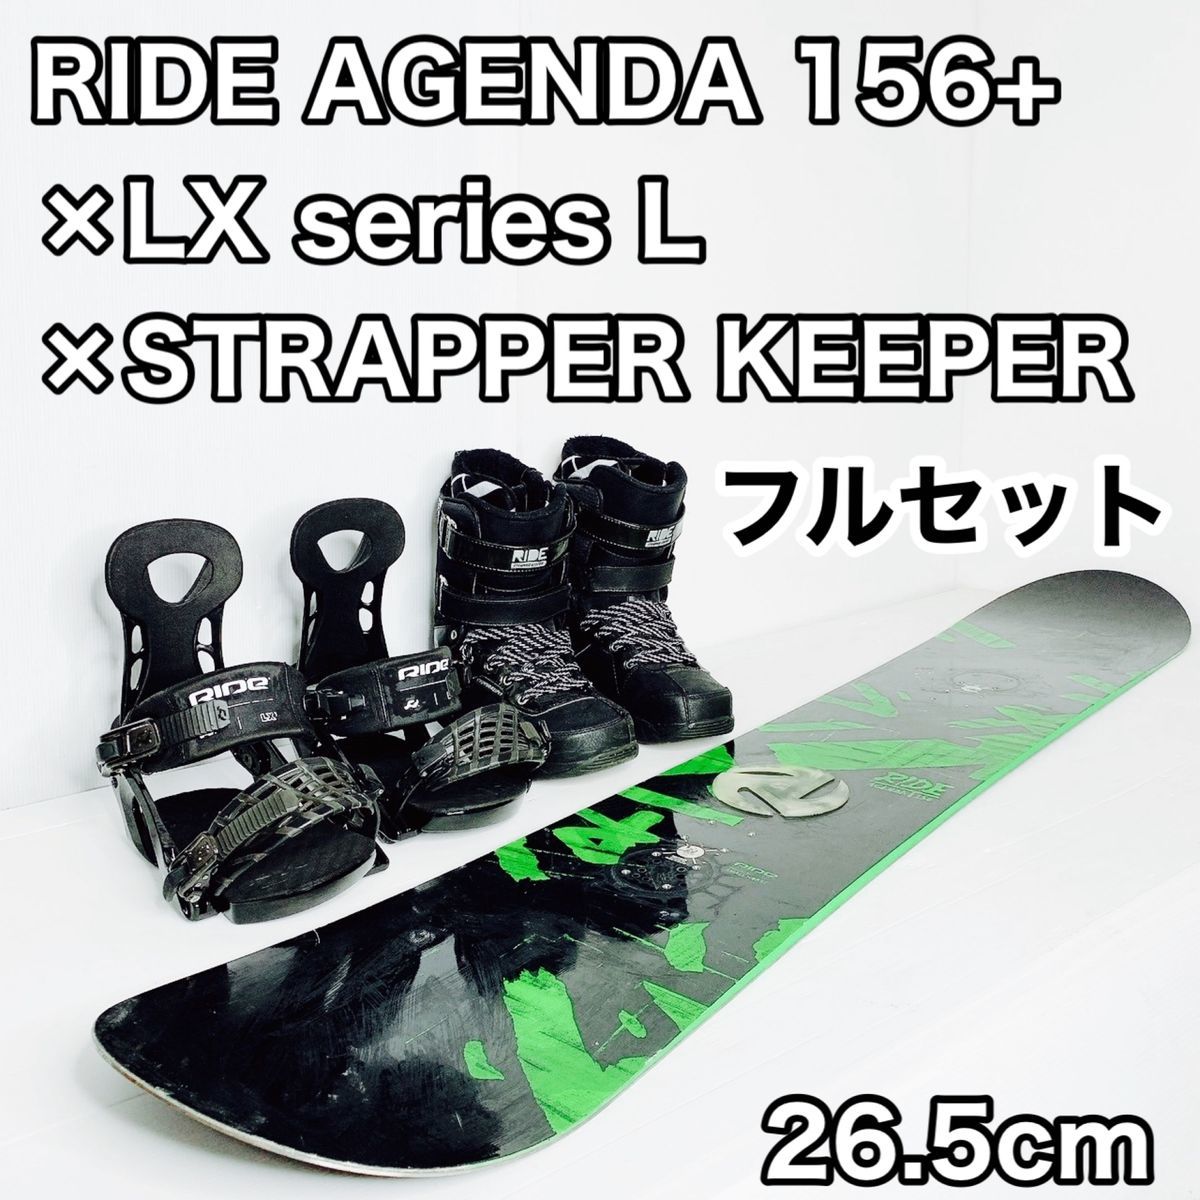 高品質】 RIDE AGENDA スノーボード セット 26.5cm KEEPER STRAPPER